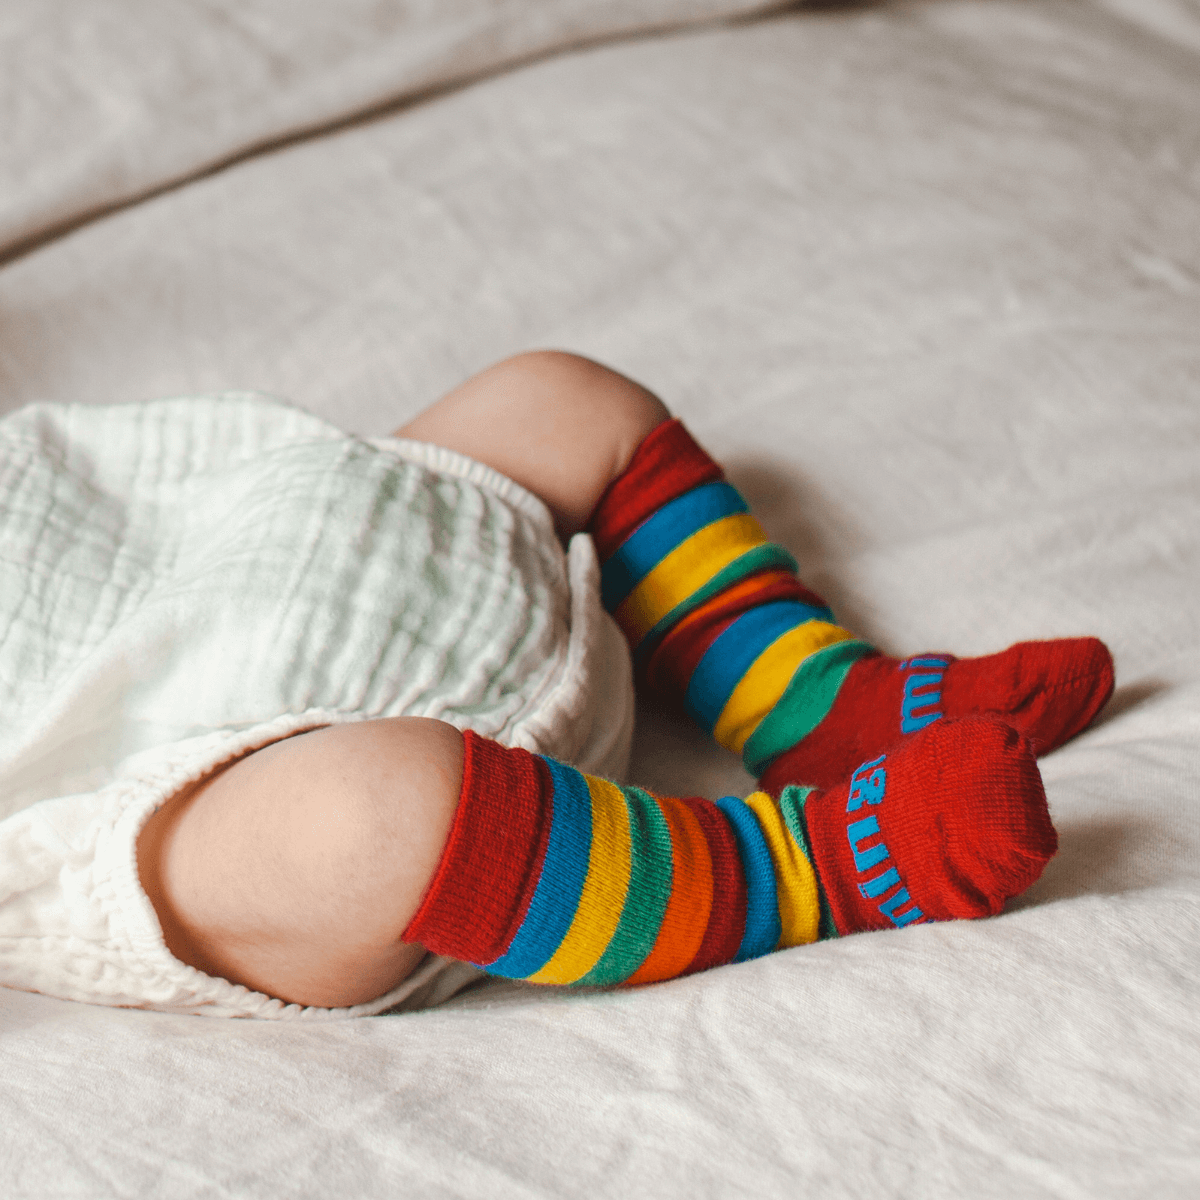 merino wool baby socks rainbow knee-high